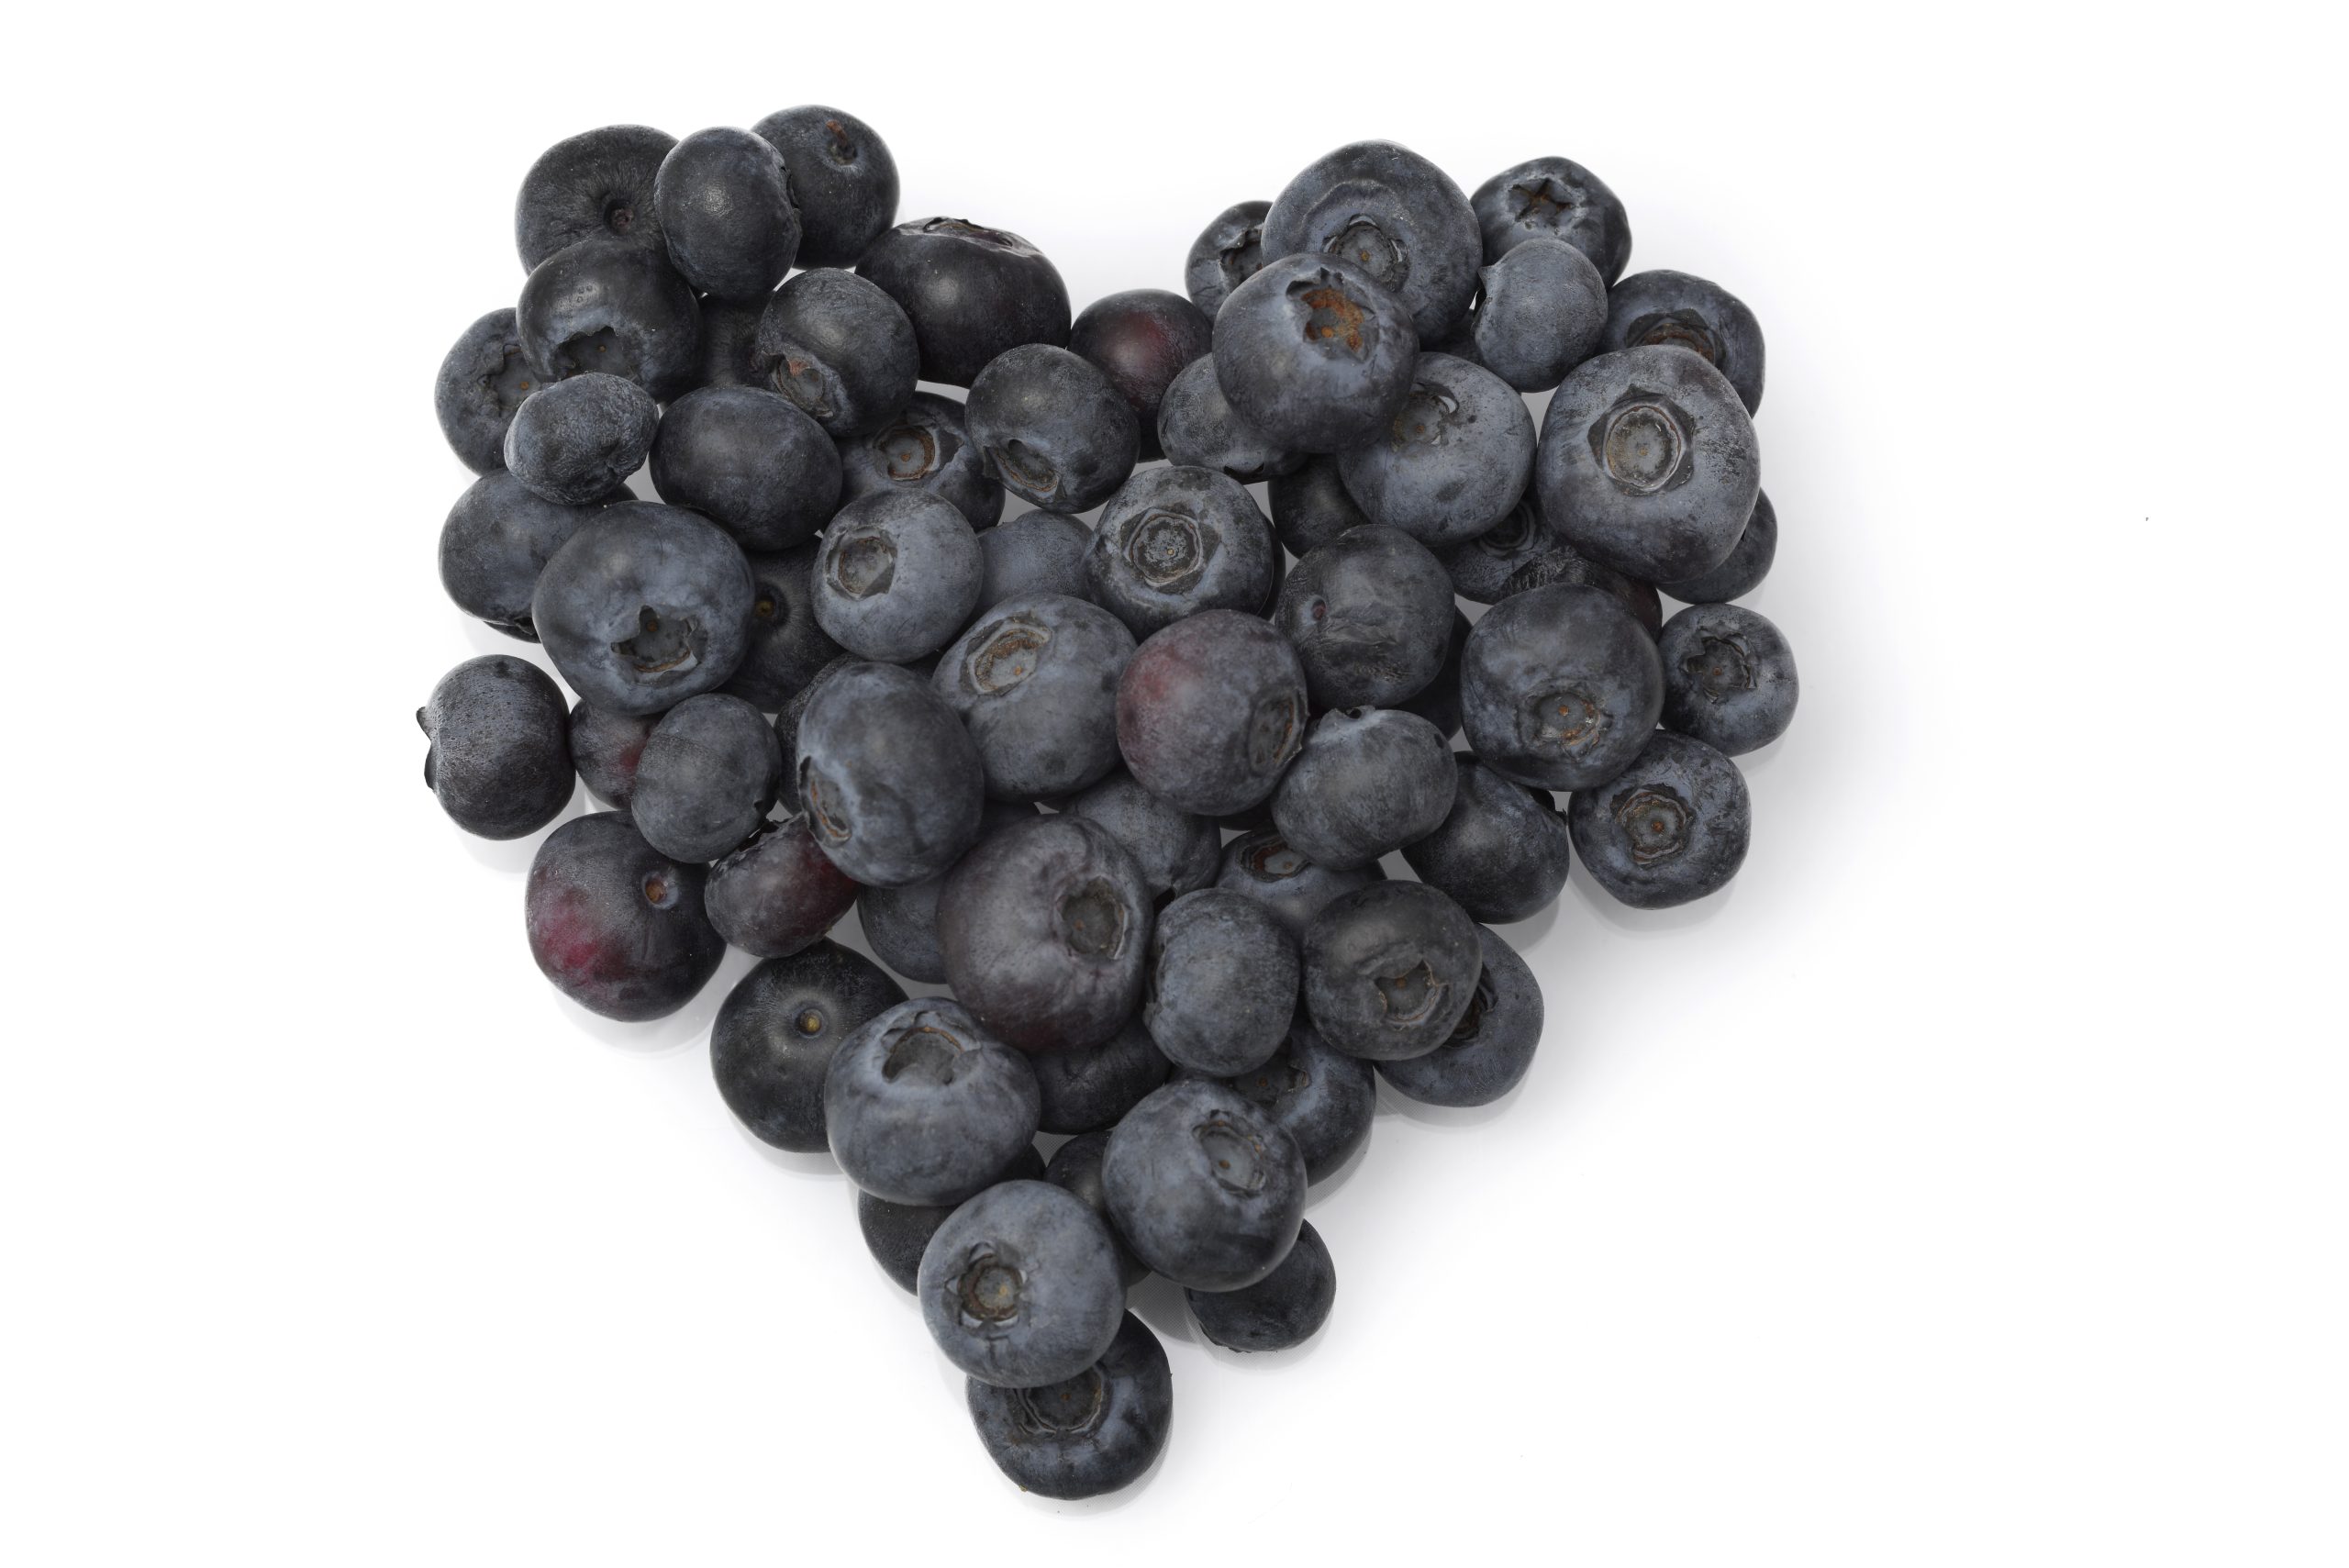 benefits of blueberries, benefits of blueberries for skin, benefits of eating blueberries, health benefits of blueberries